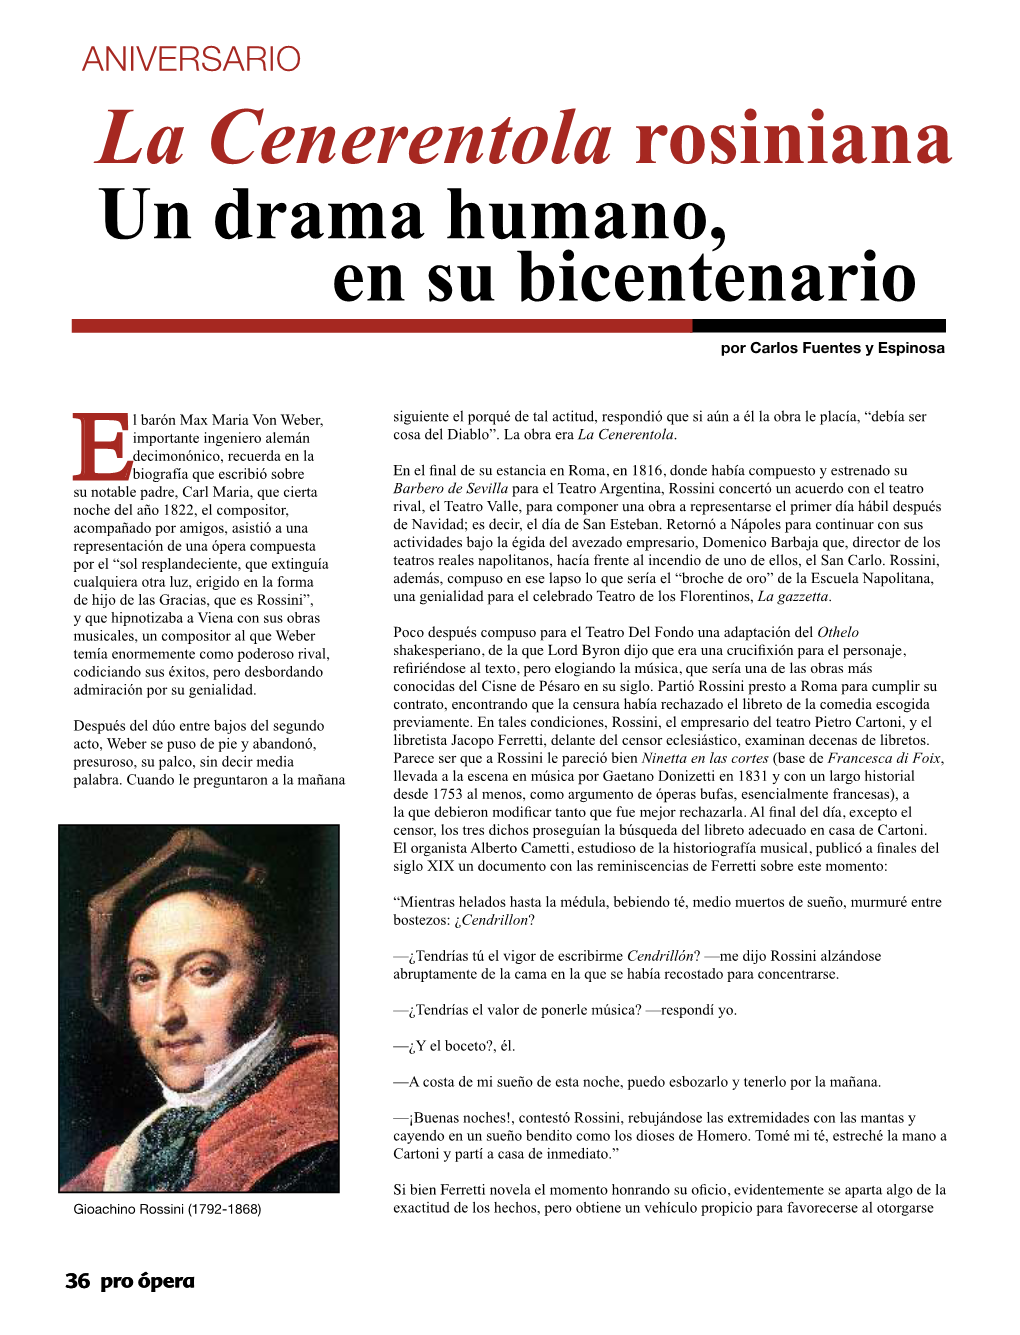 La Cenerentola Rosiniana Un Drama Humano, En Su Bicentenario